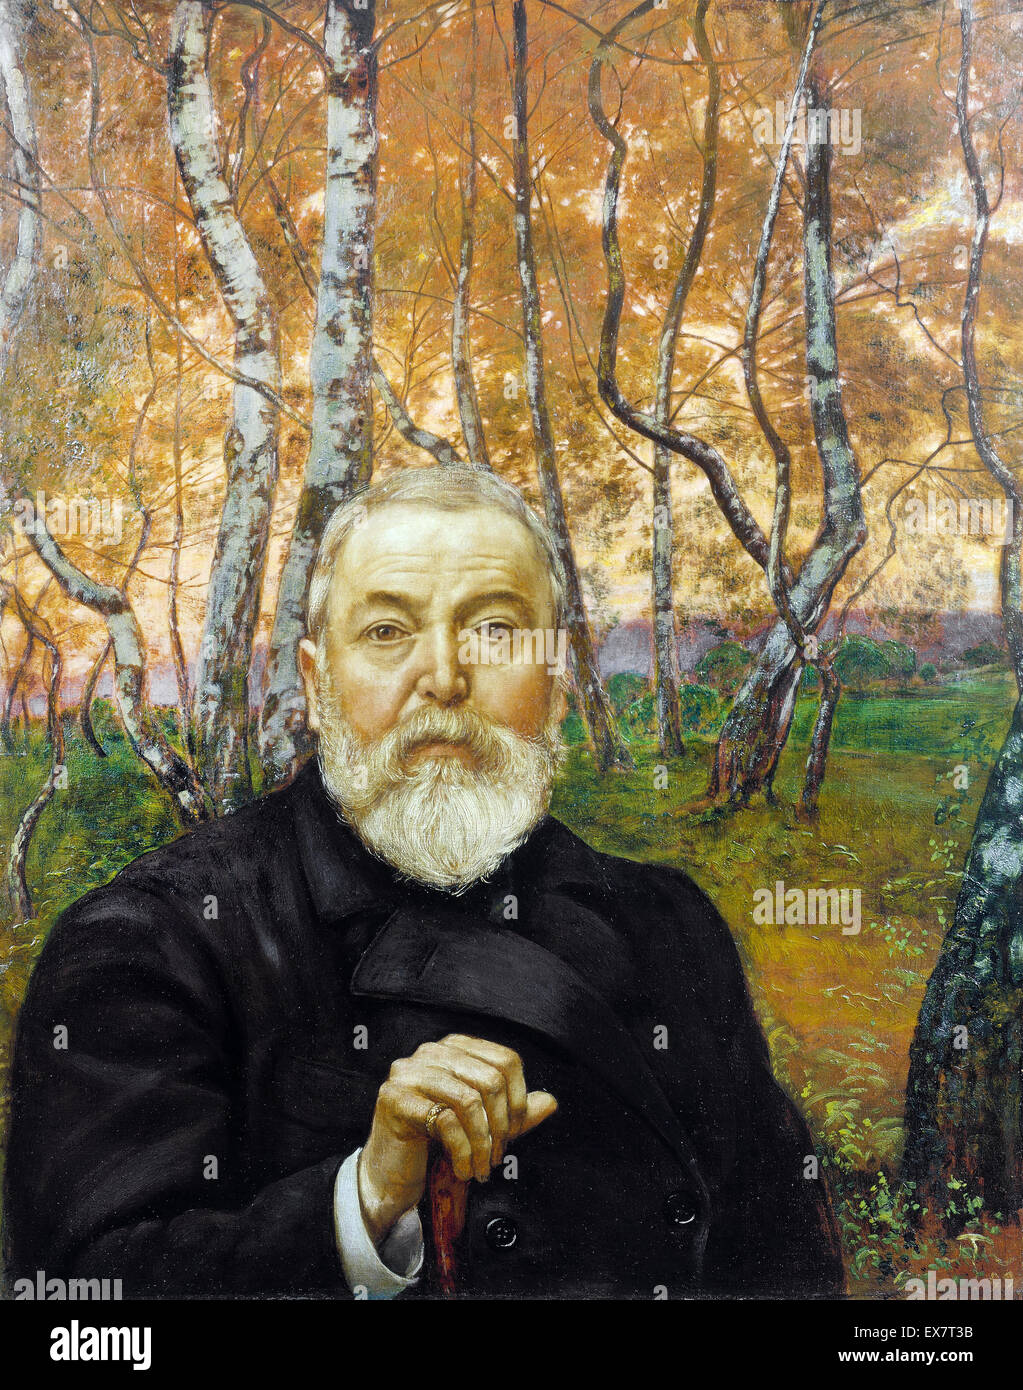 Hans Thoma, l'auto-portrait en face d'une forêt de bouleaux 1899 Huile sur toile. Stadel, Frankfurt am Main, Allemagne. Banque D'Images